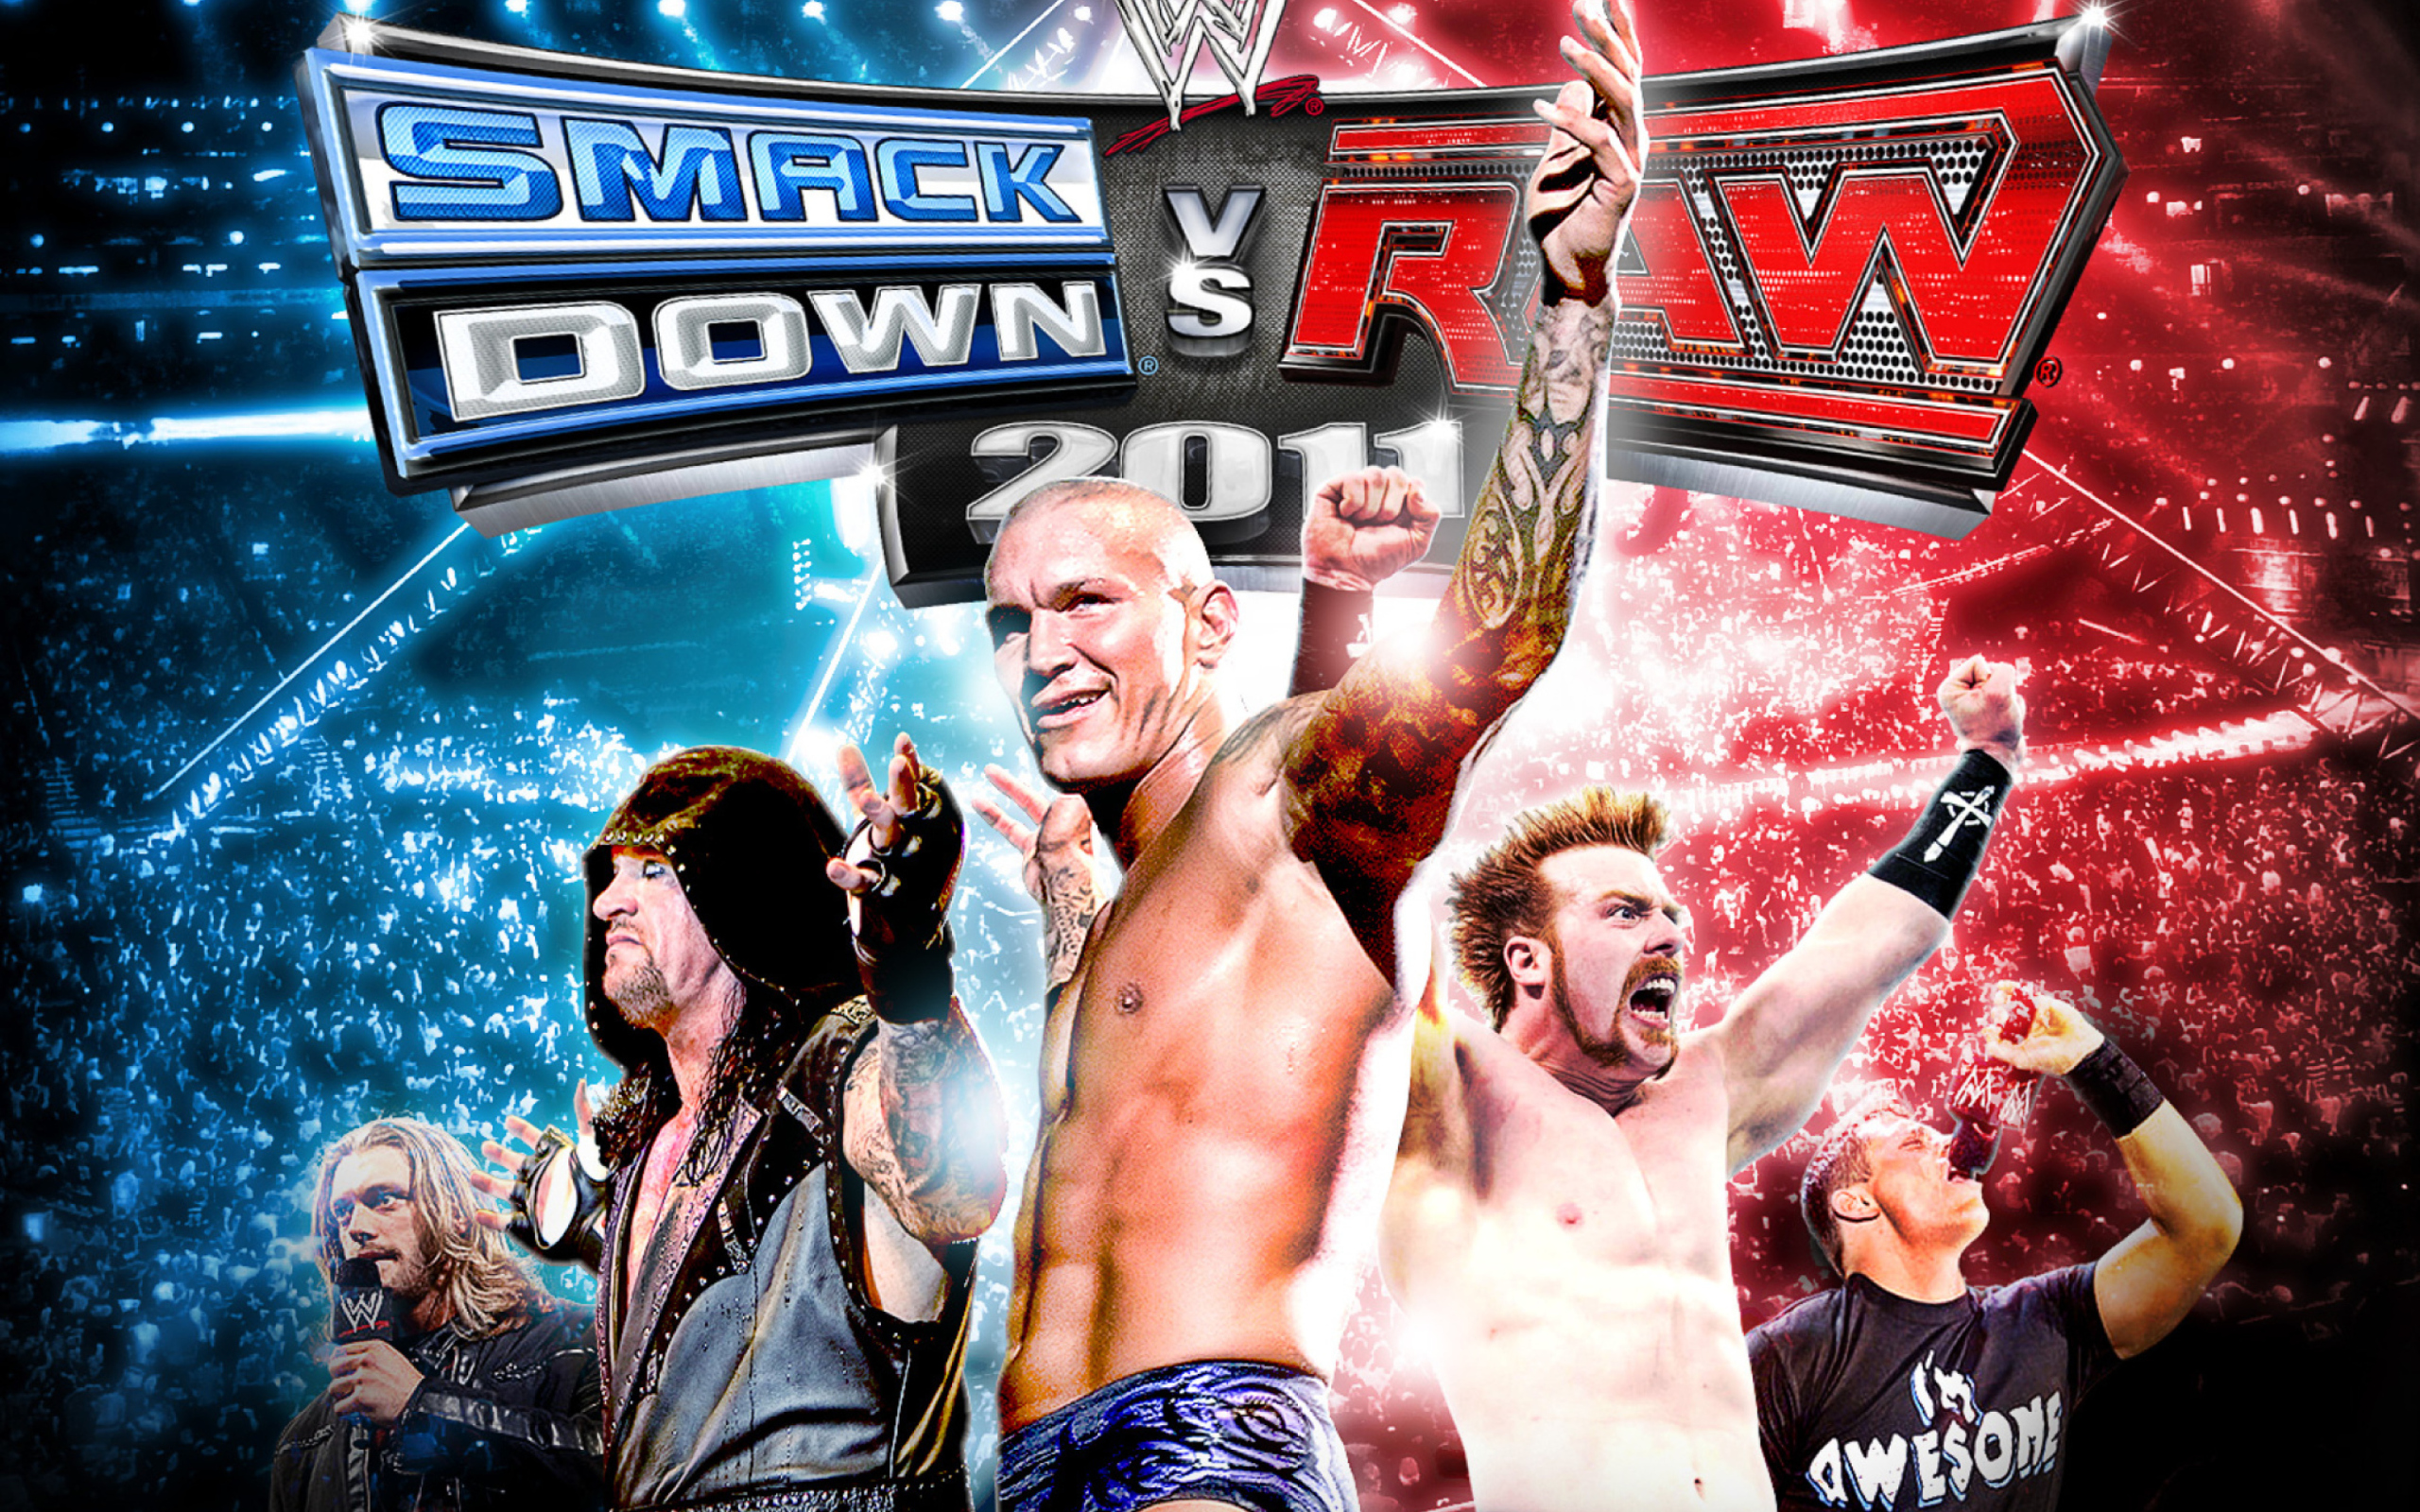 Smackdown Vs Raw - Royal Rumble wallpaper 2560x1600